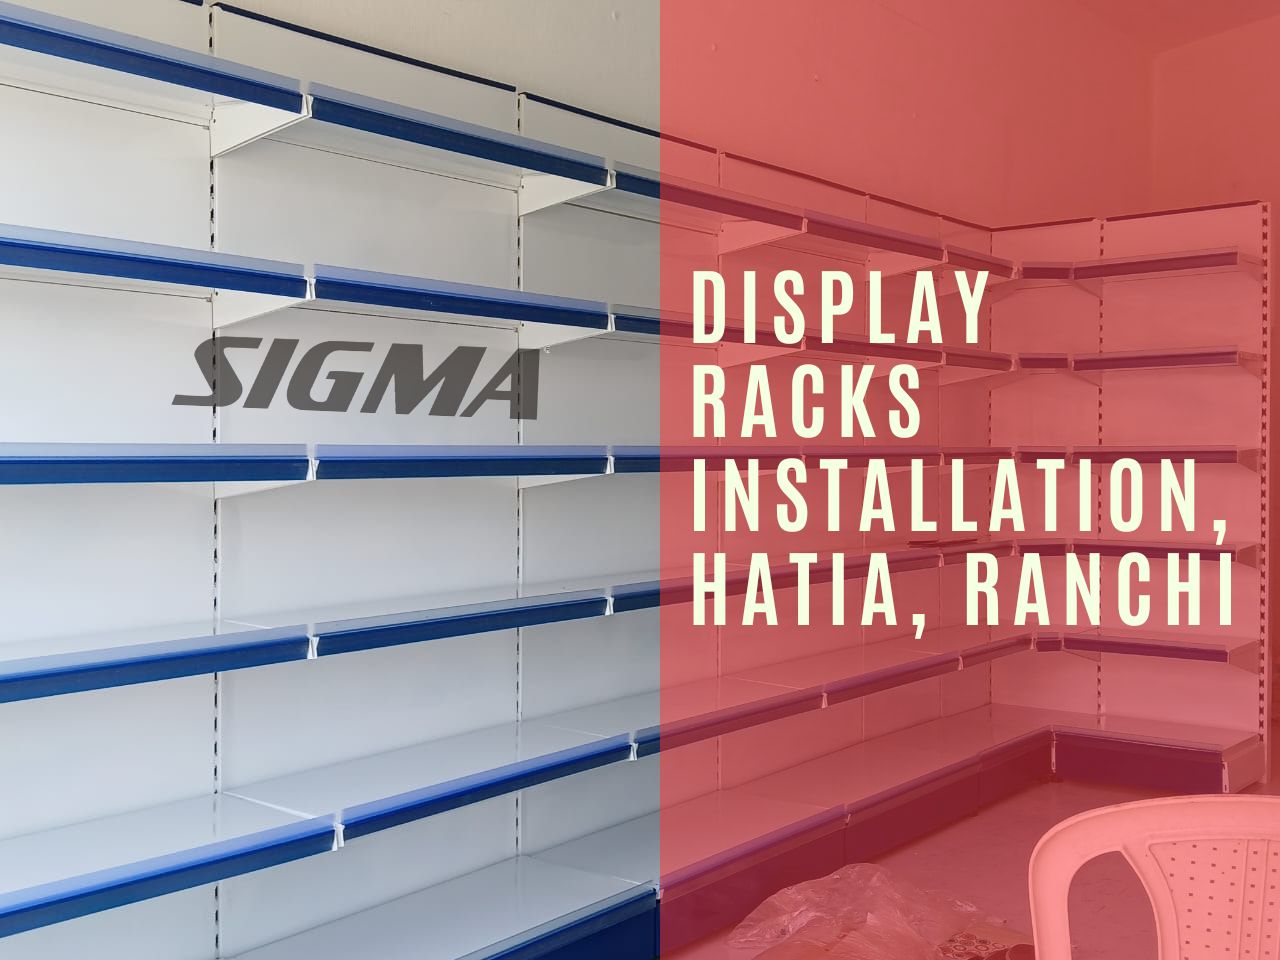 Display racks Installation, Hatia, Ranchi.jpg